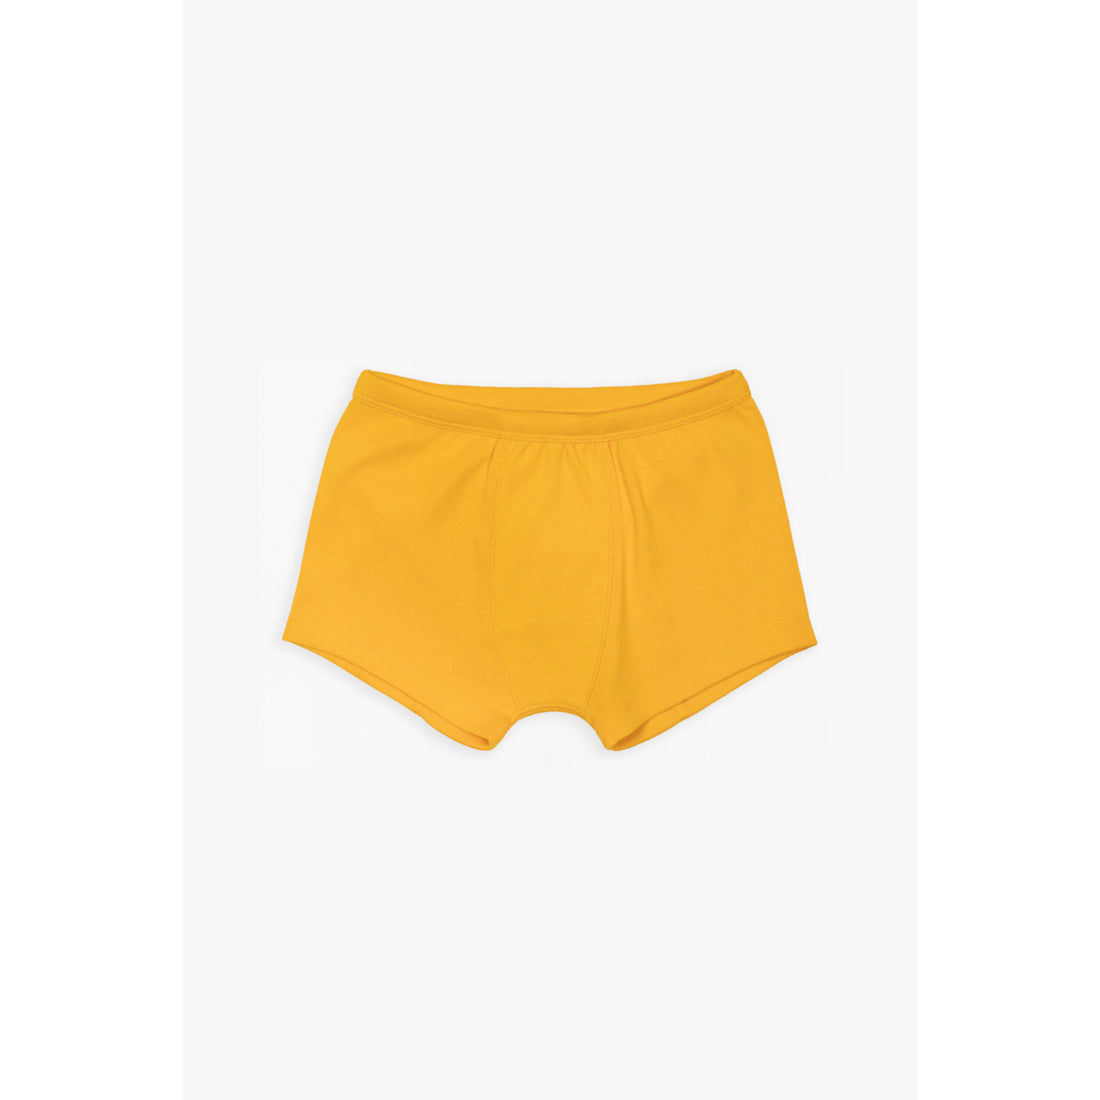 Gots 100% Certified Organic Cotton Boxer Shorts - Sun Yellow